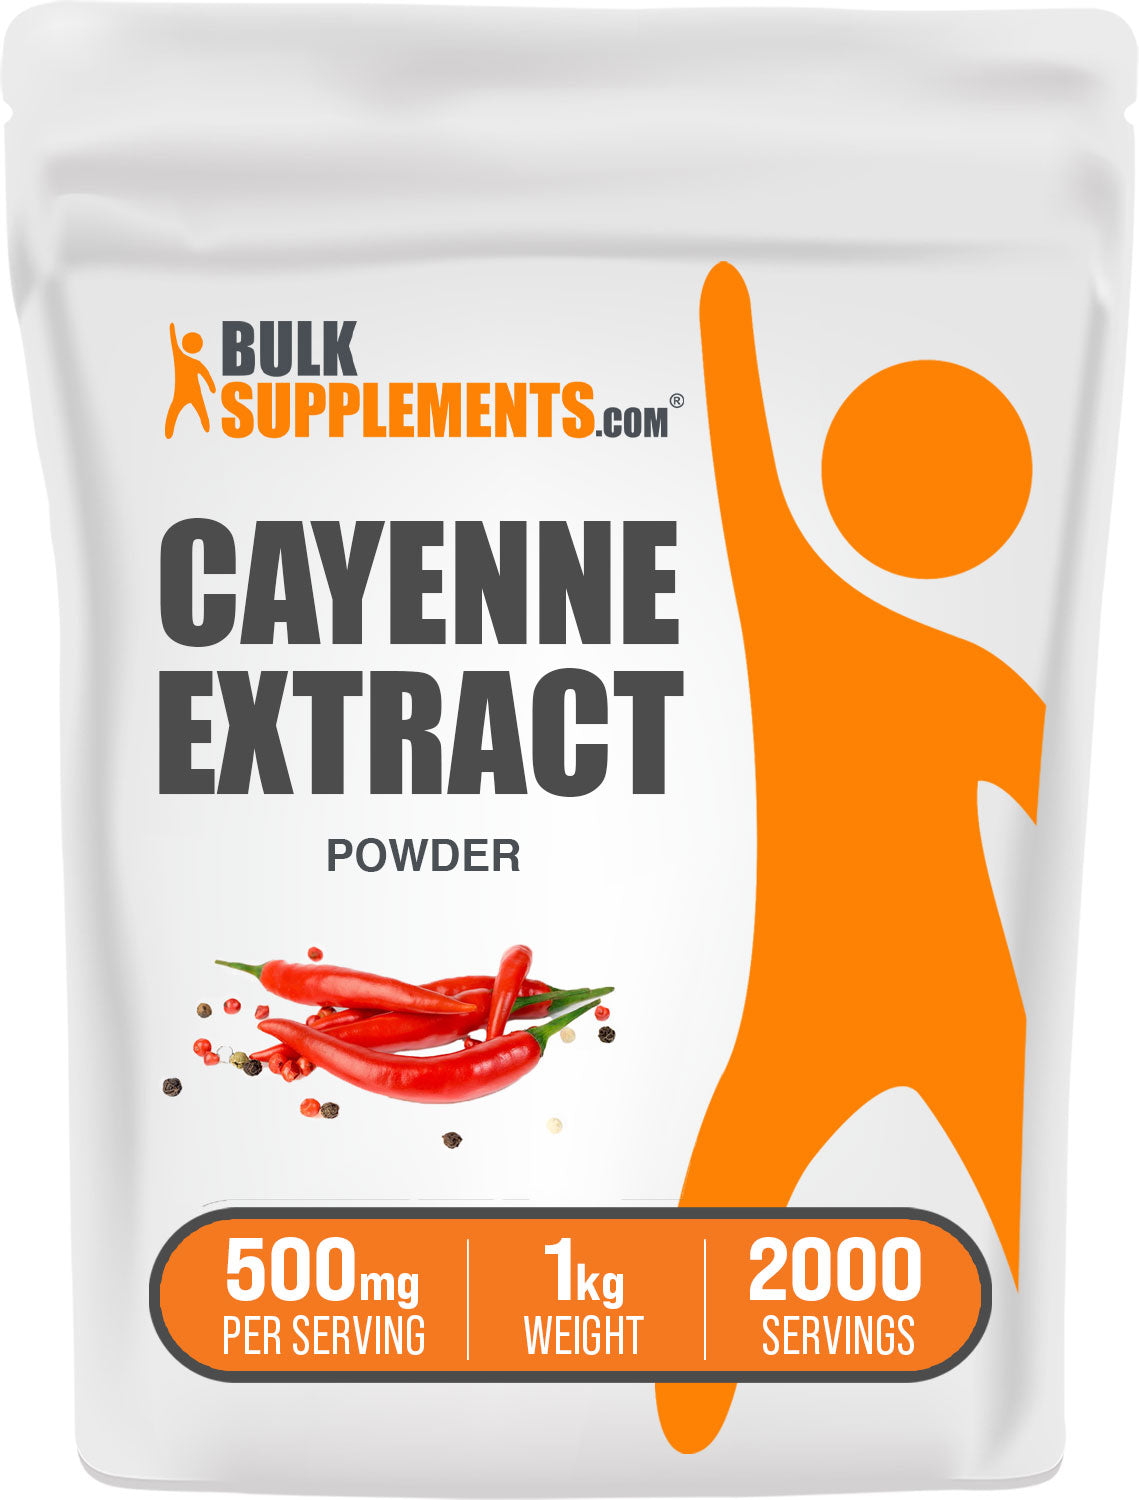 1kg cayenne pepper powder